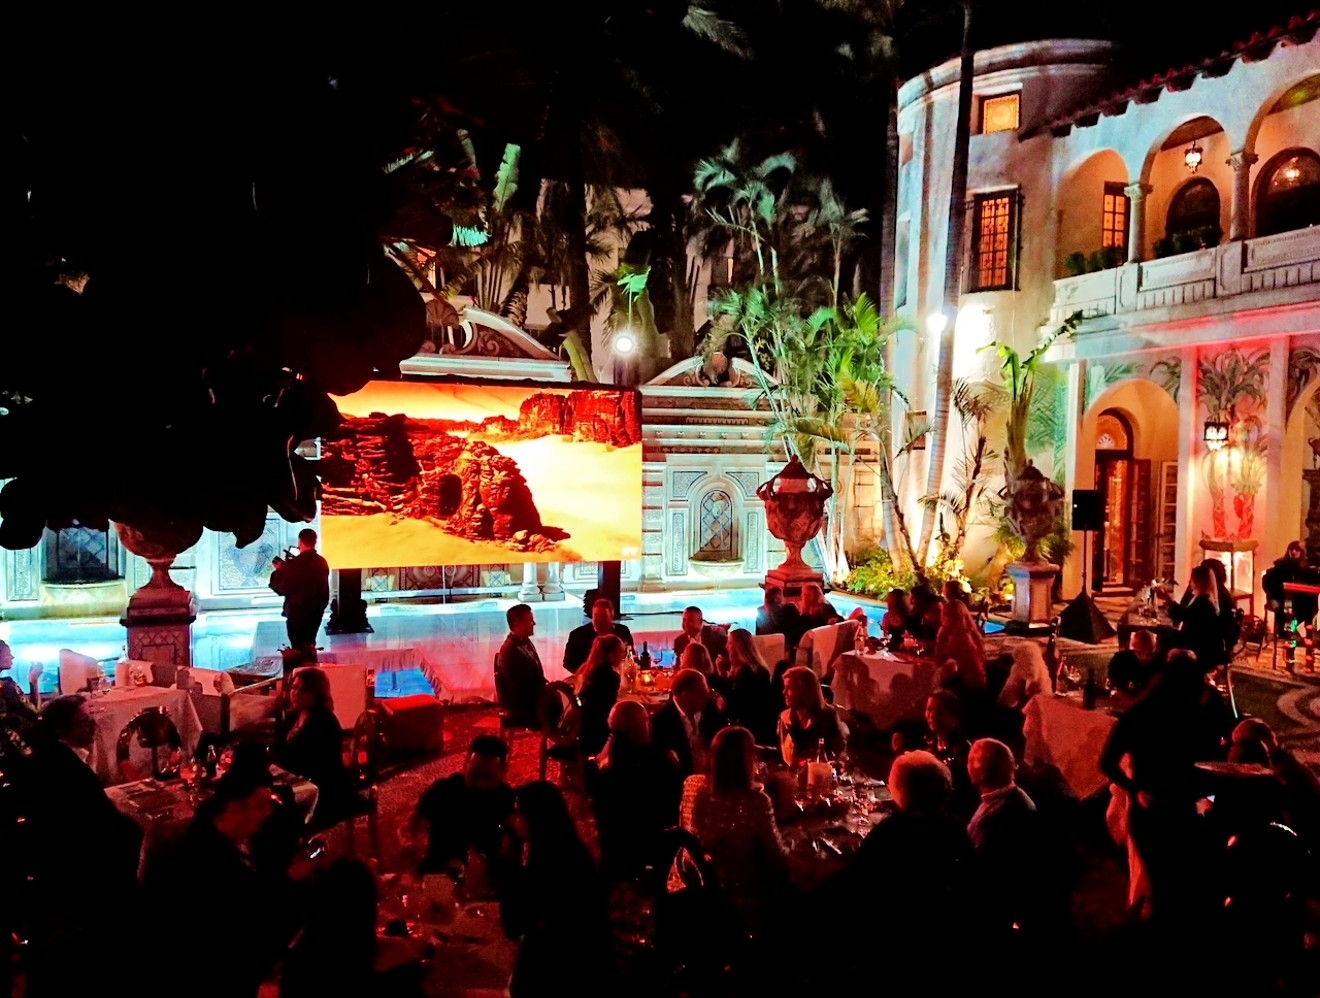 Poolside viewing party at Villa Casa Casuarina.